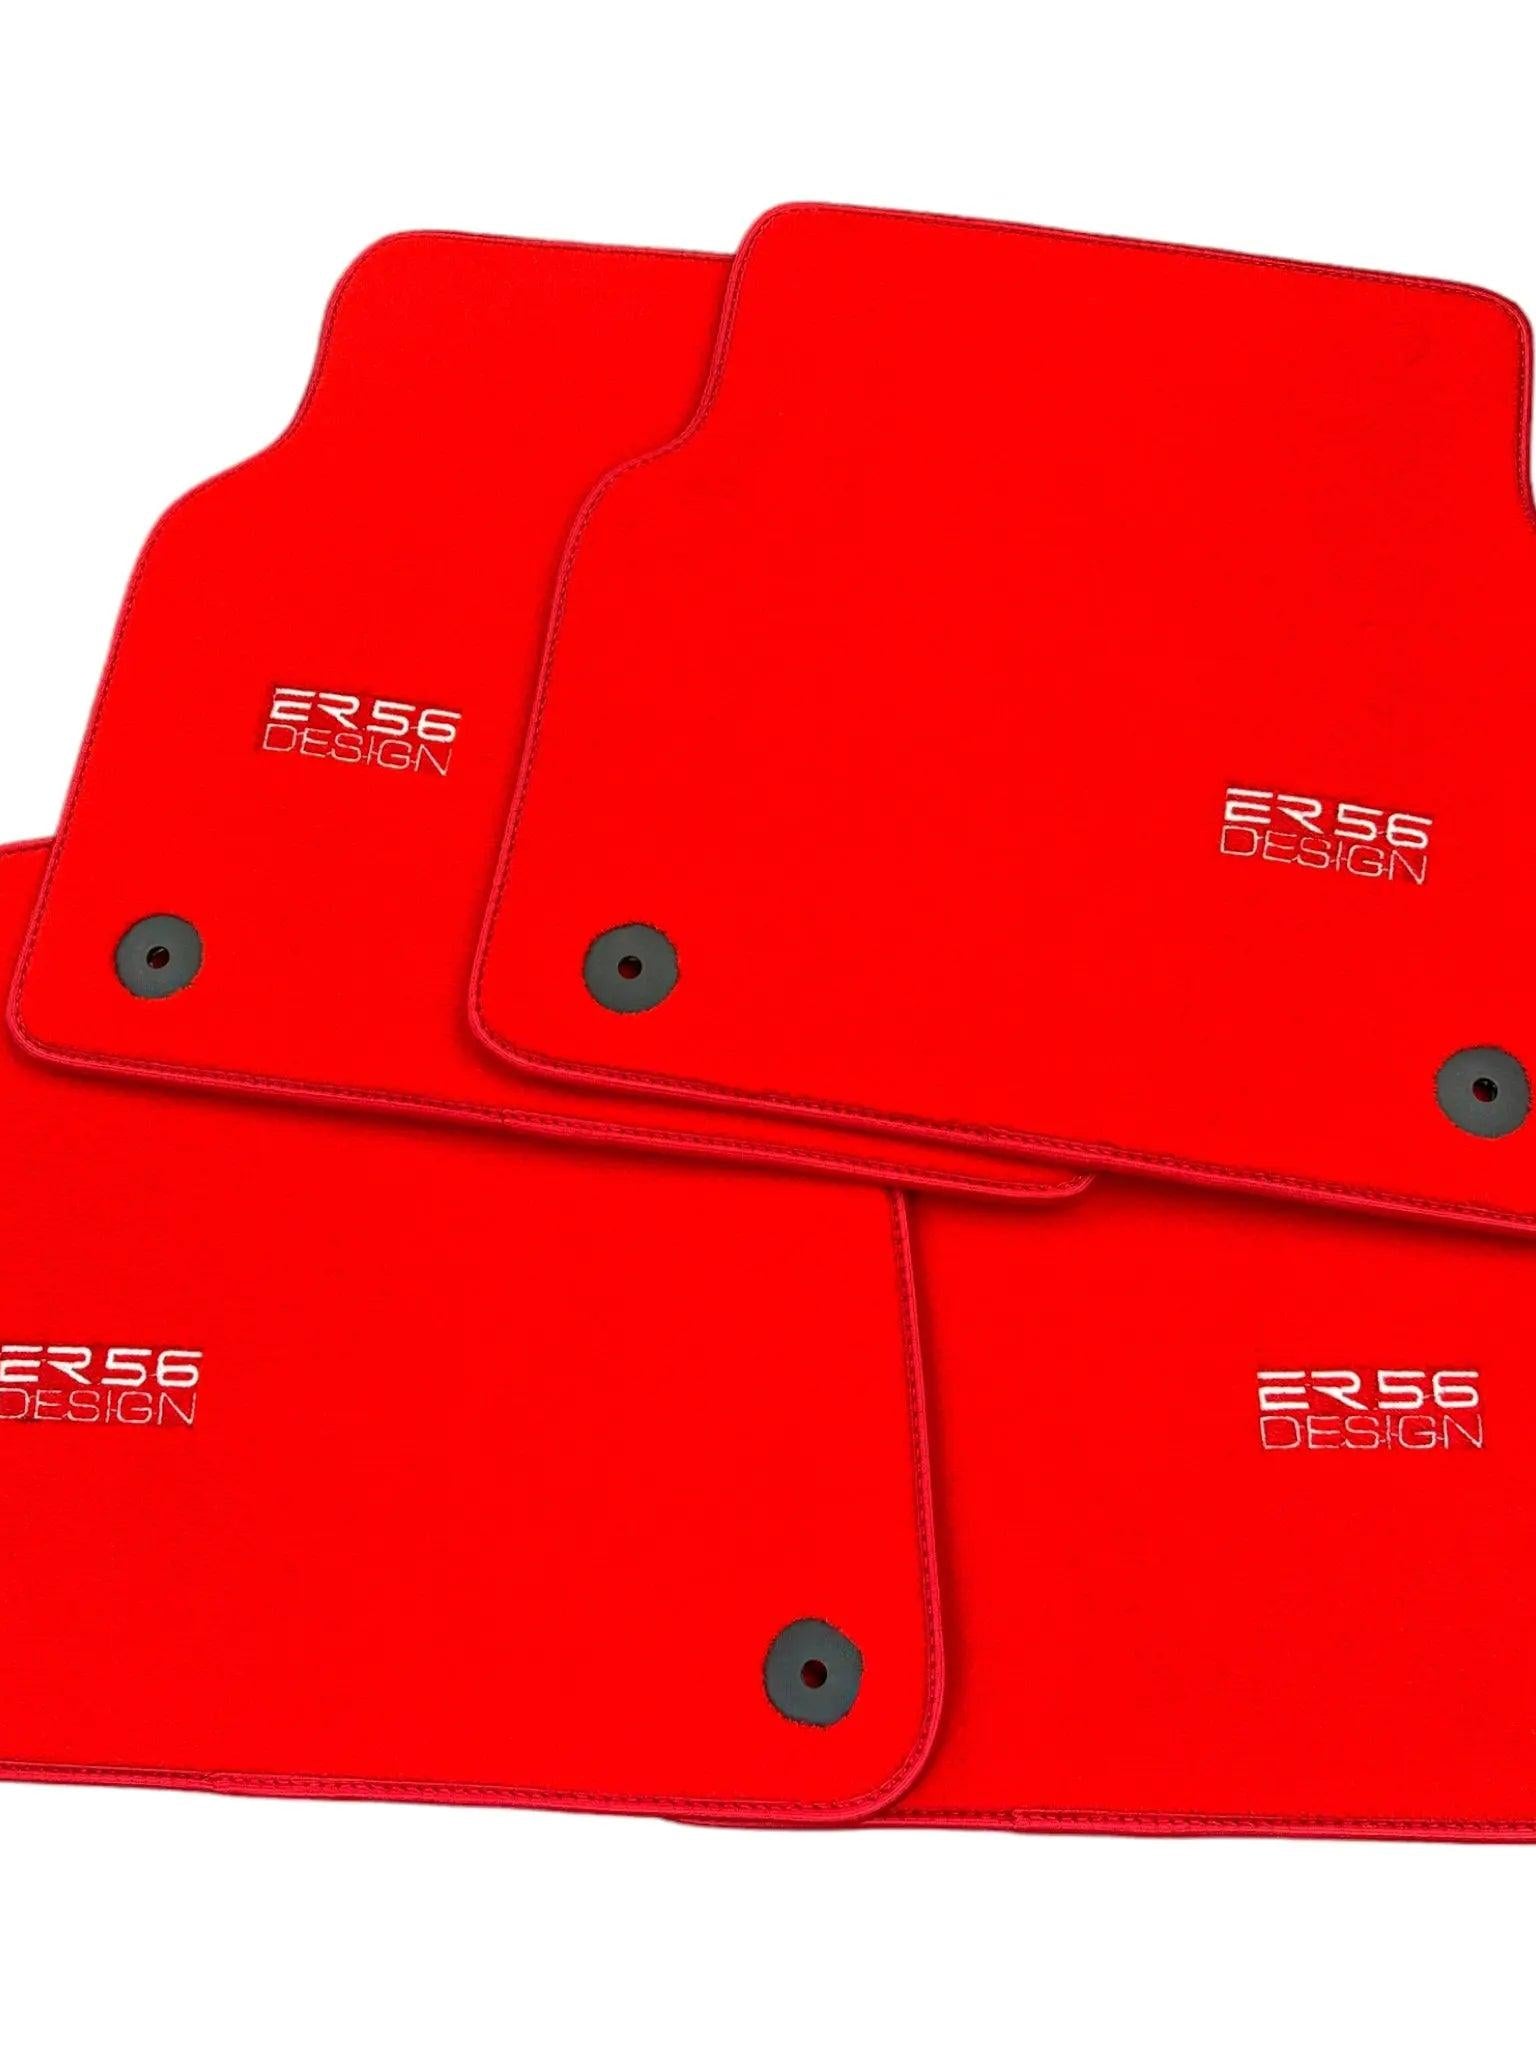 Red Floor Mats for Audi A4 - B7 Sedan (2005-2008) | ER56 Design